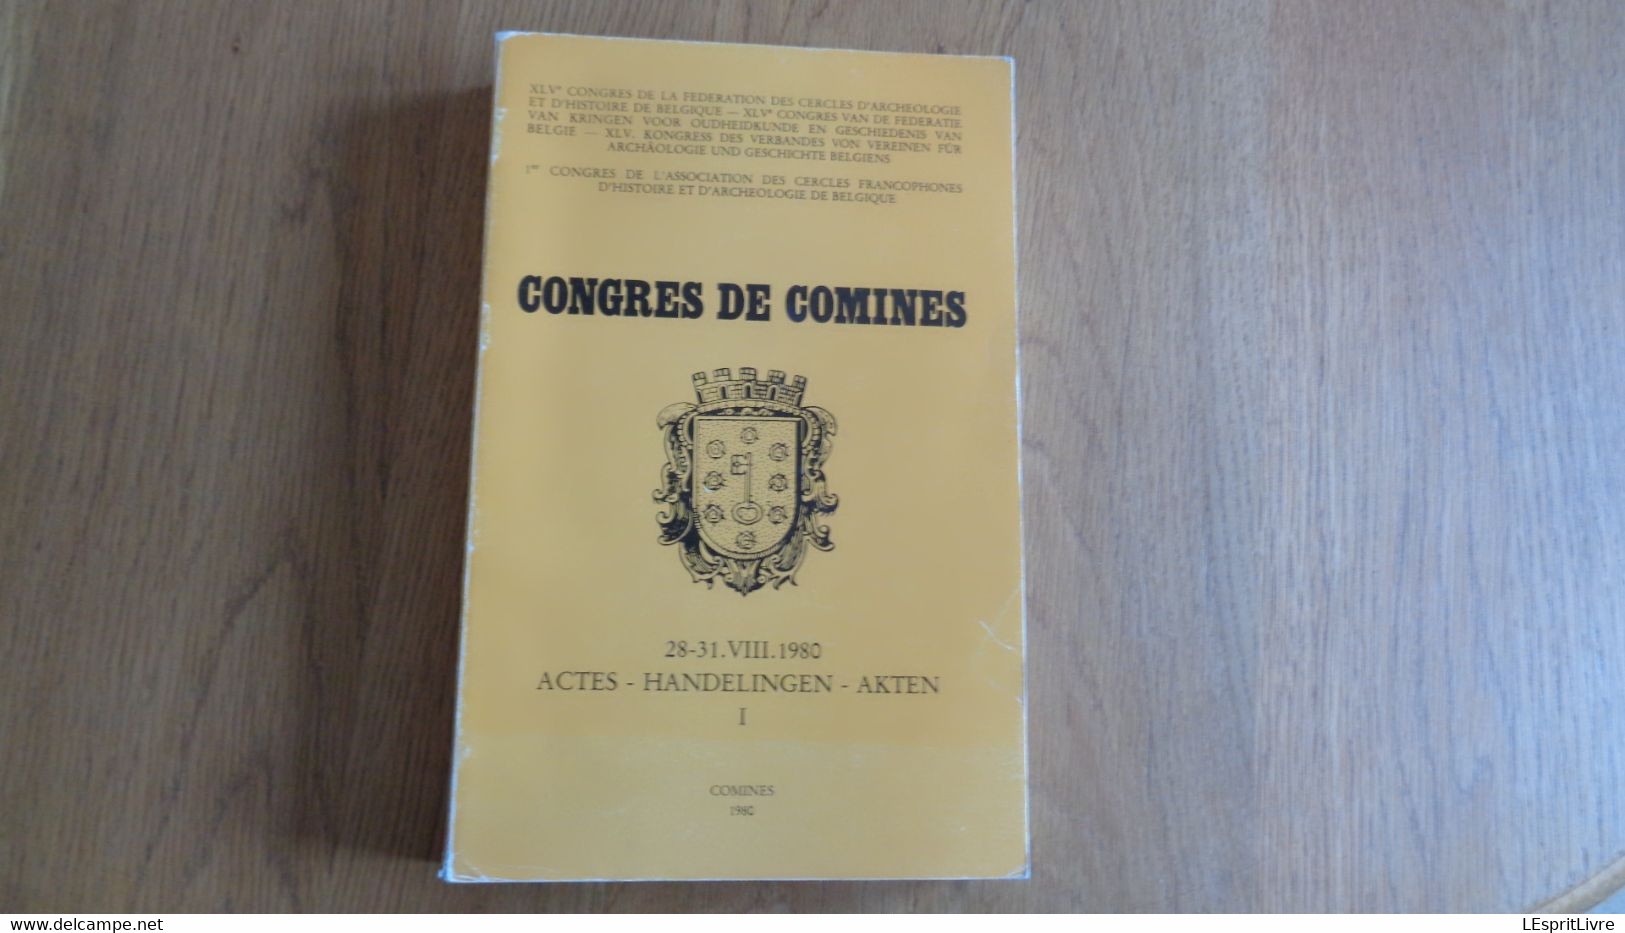 CONGRES DE COMINES Actes 1 Régionalisme Hainaut Histoire Folklore Archéologie Commerce Industrie Wallonie Art Moyen Age - België